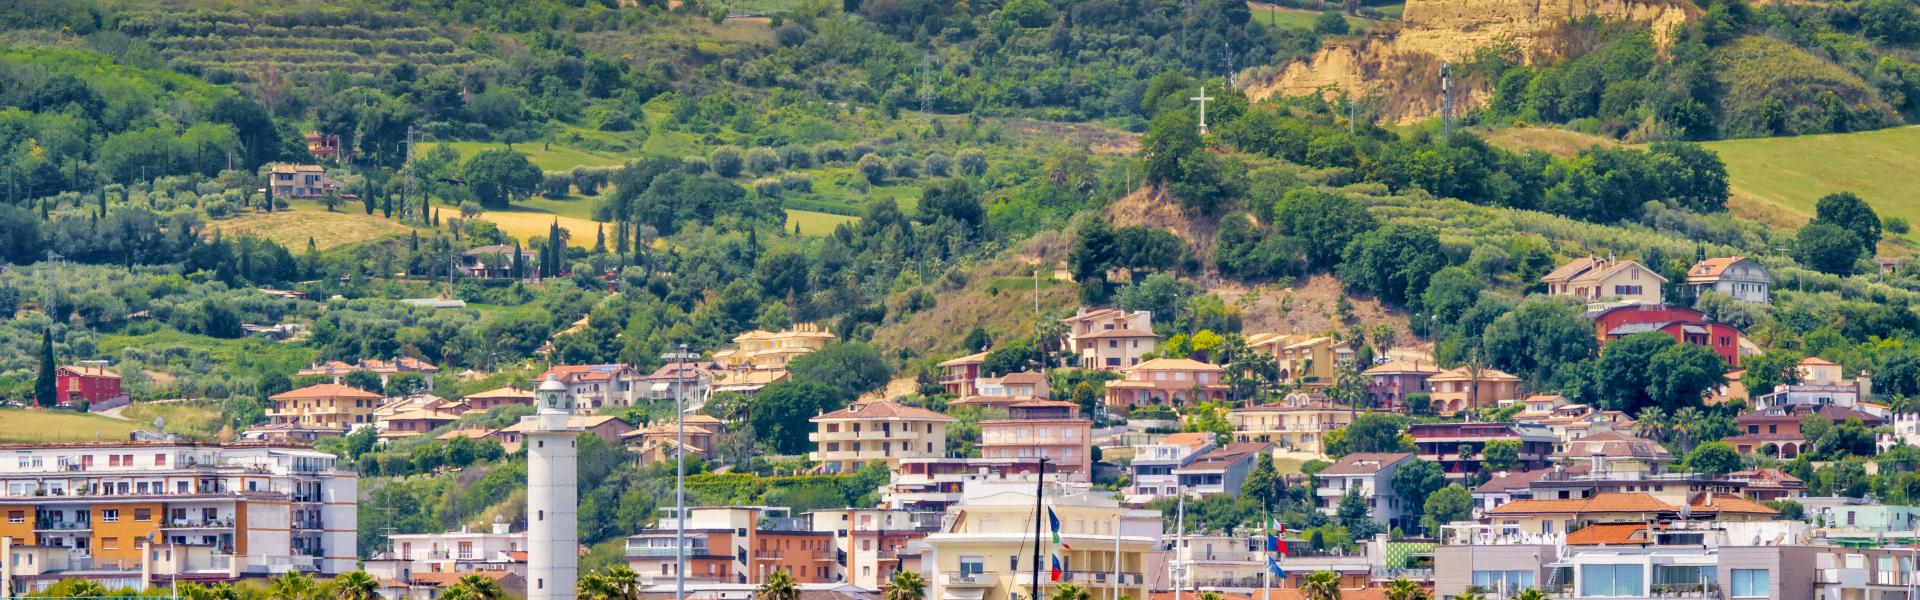 San Benedetto del Tronto town view